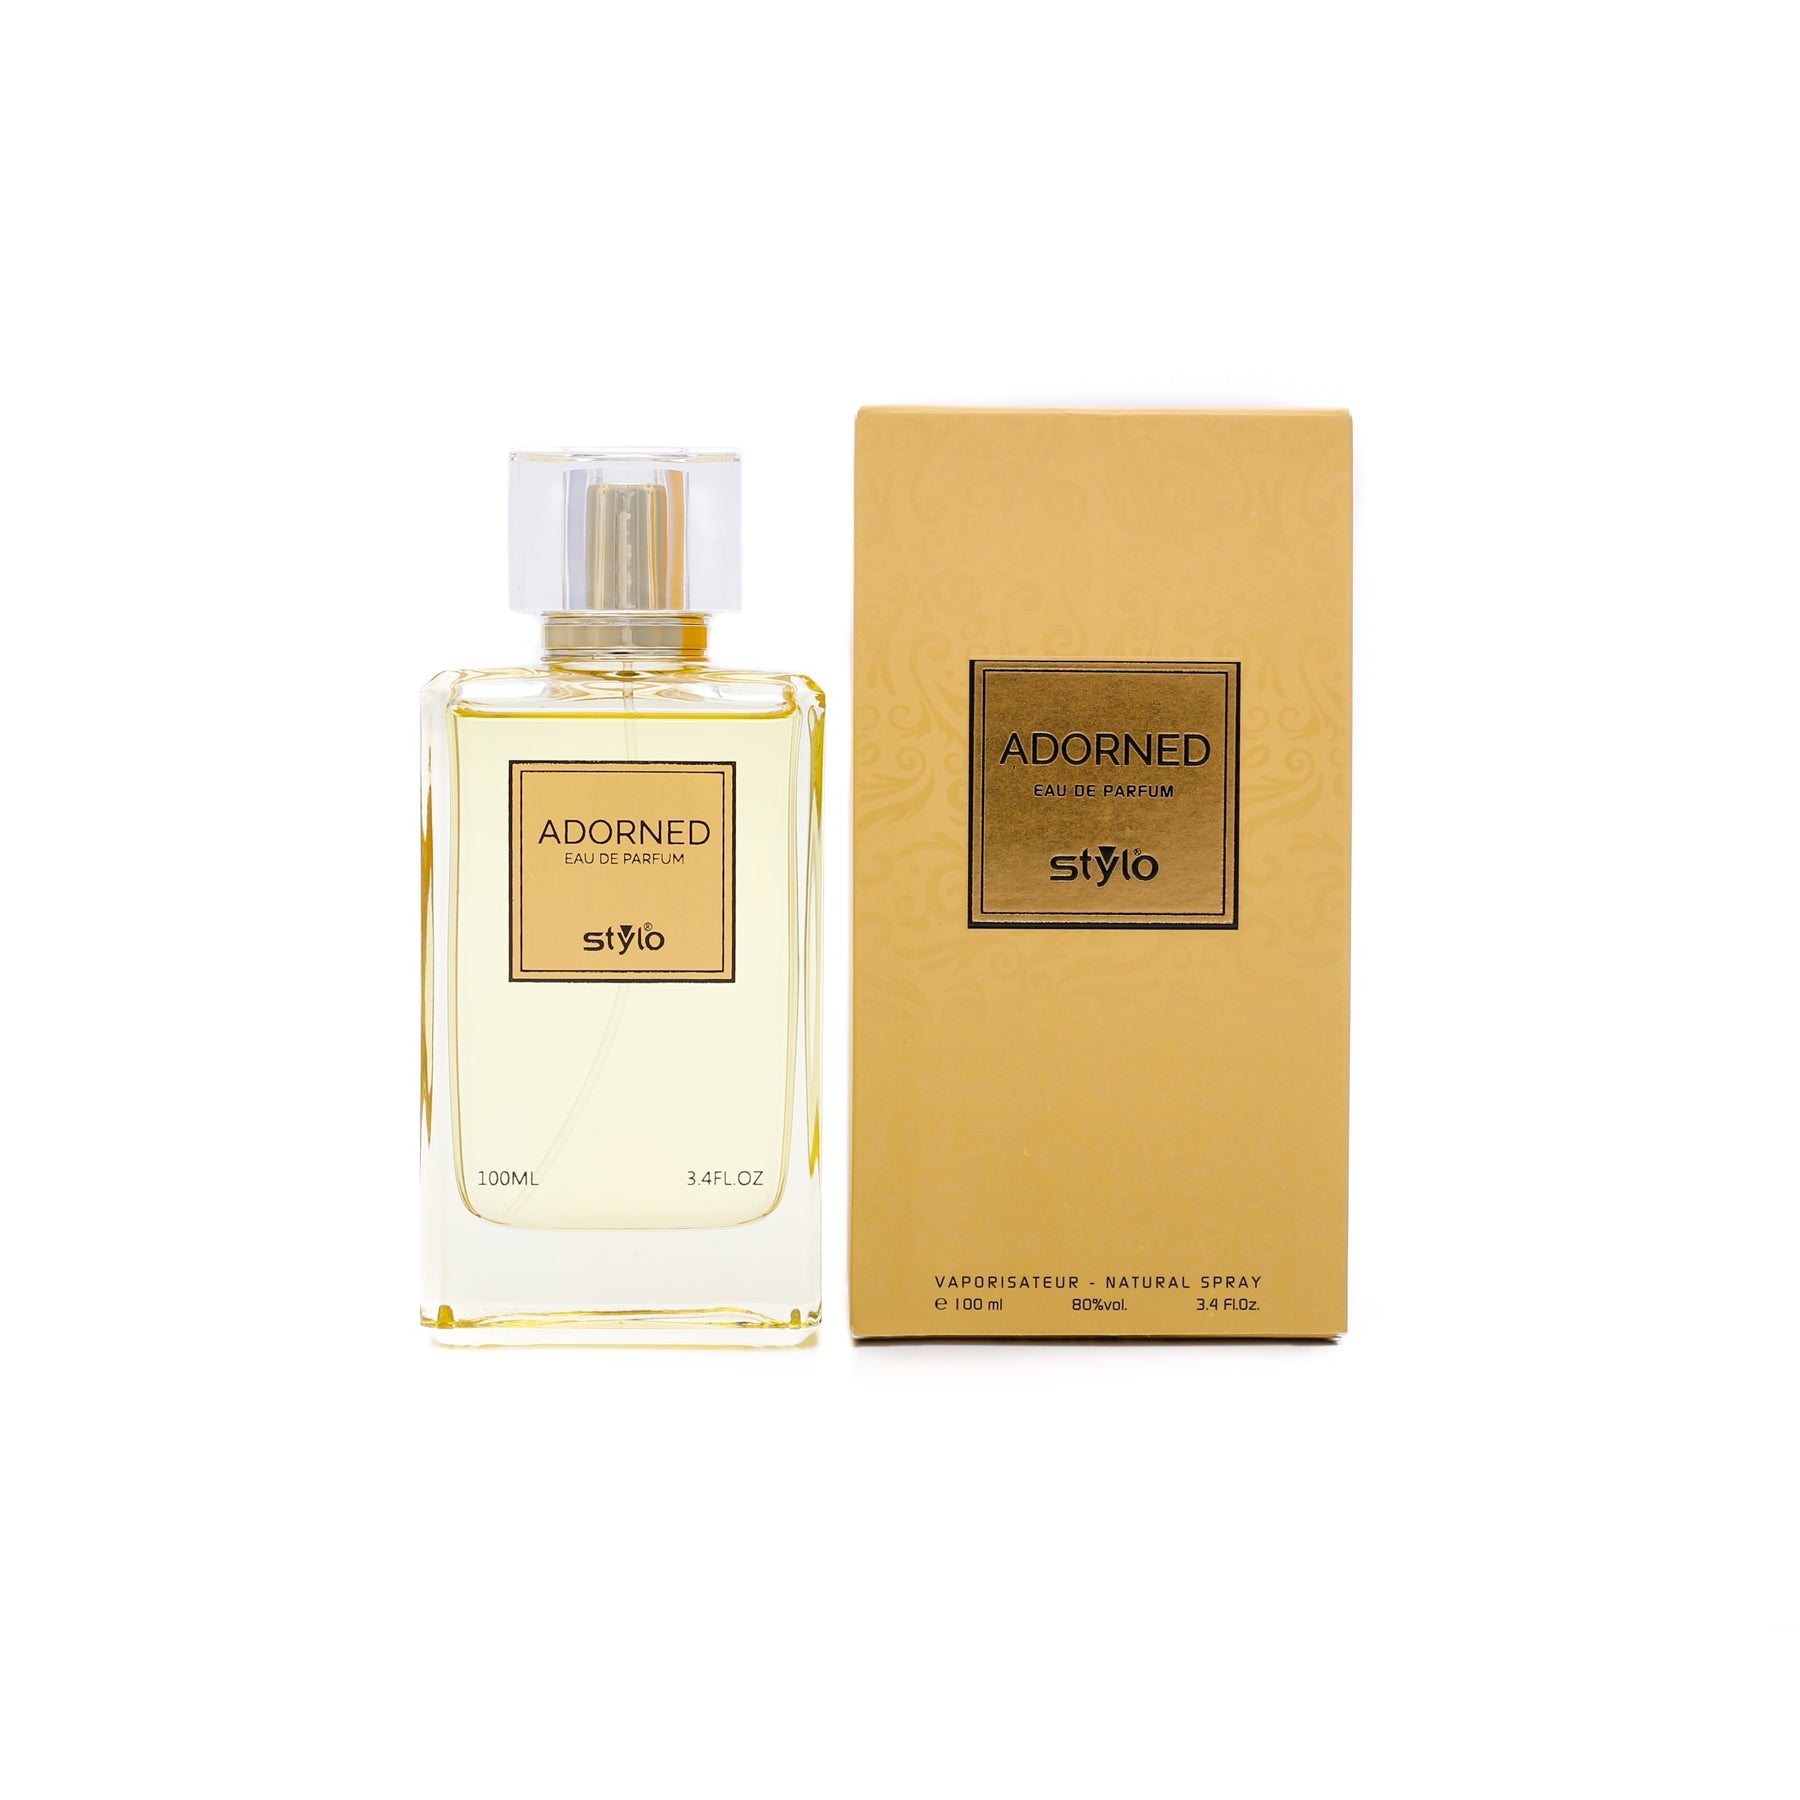 ADORNED Perfume For Women PR0011